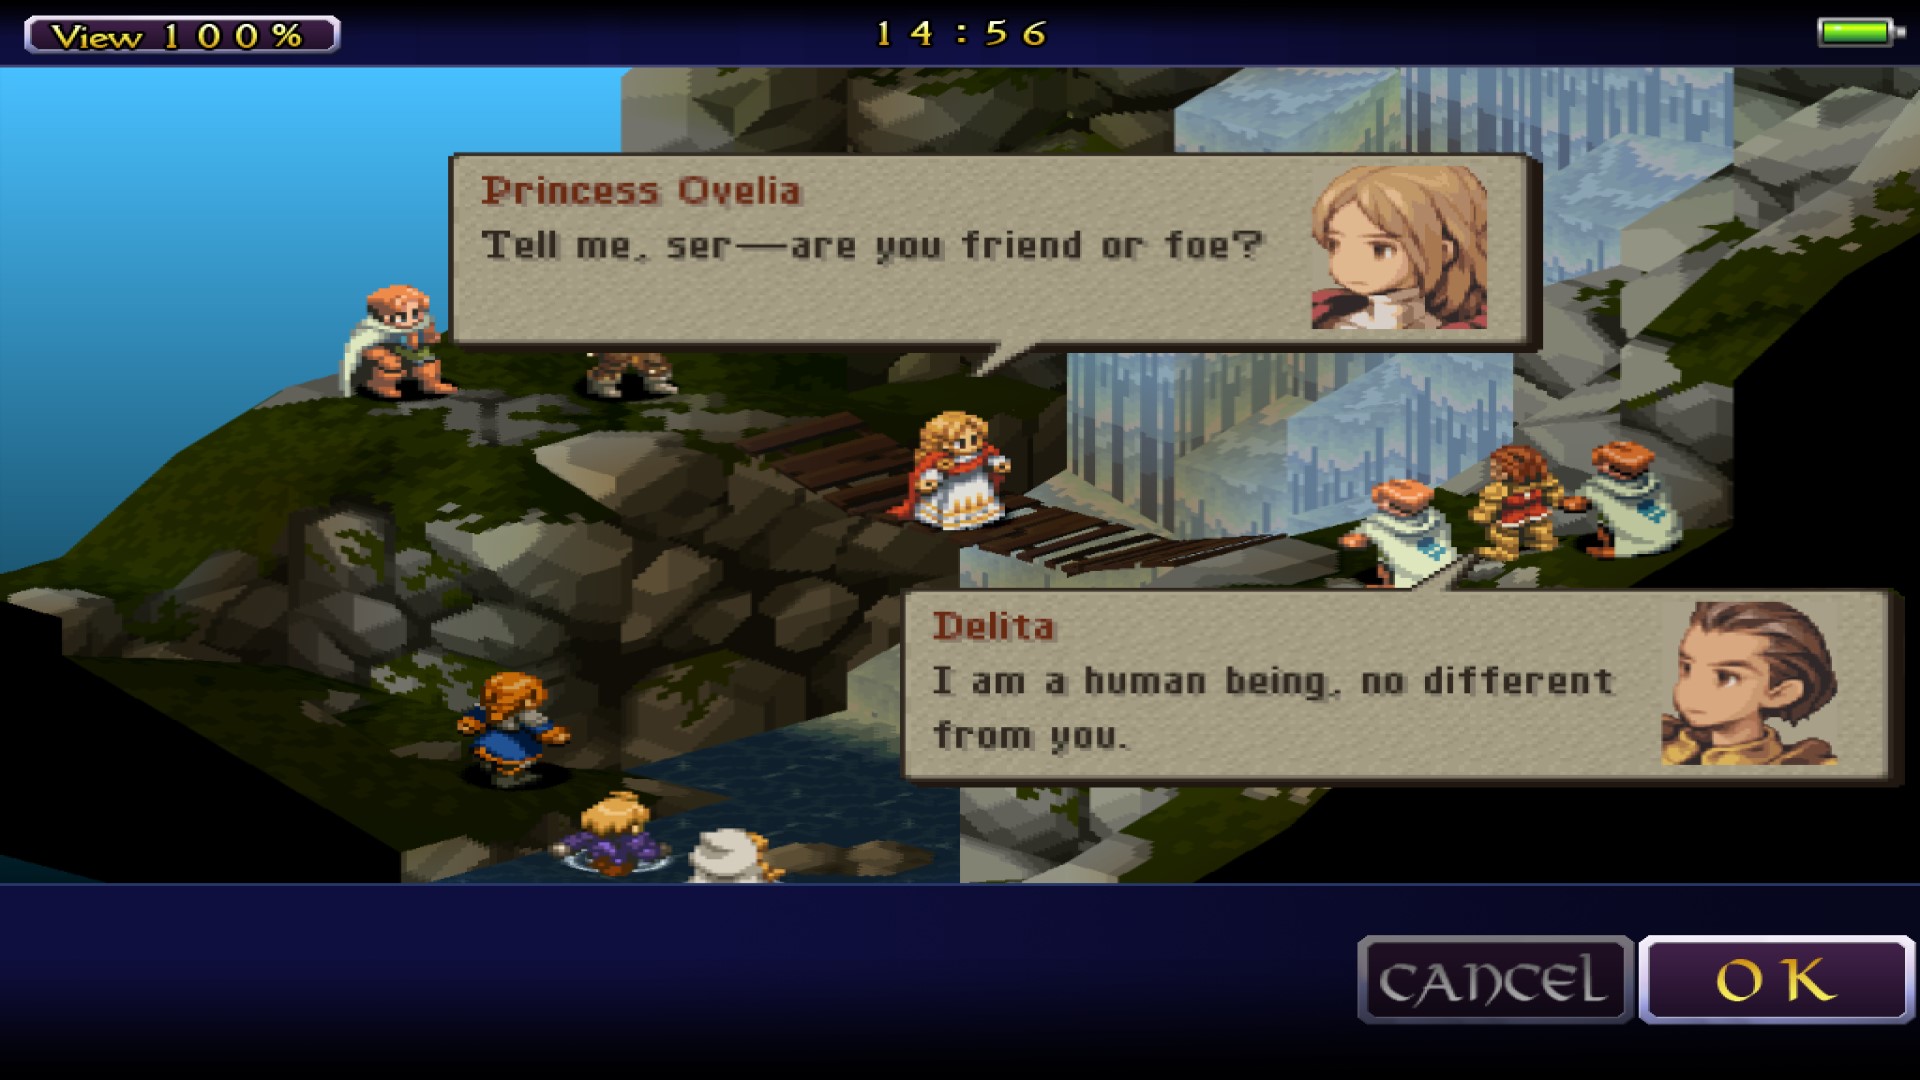 משחקי אסטרטגיה ניידים הטובים ביותר: טקטיקות Final Fantasy: מלחמת האריות. הדמויות עומדות סביב גשר מפל. הדמות הנסיכה אוליה אומרת